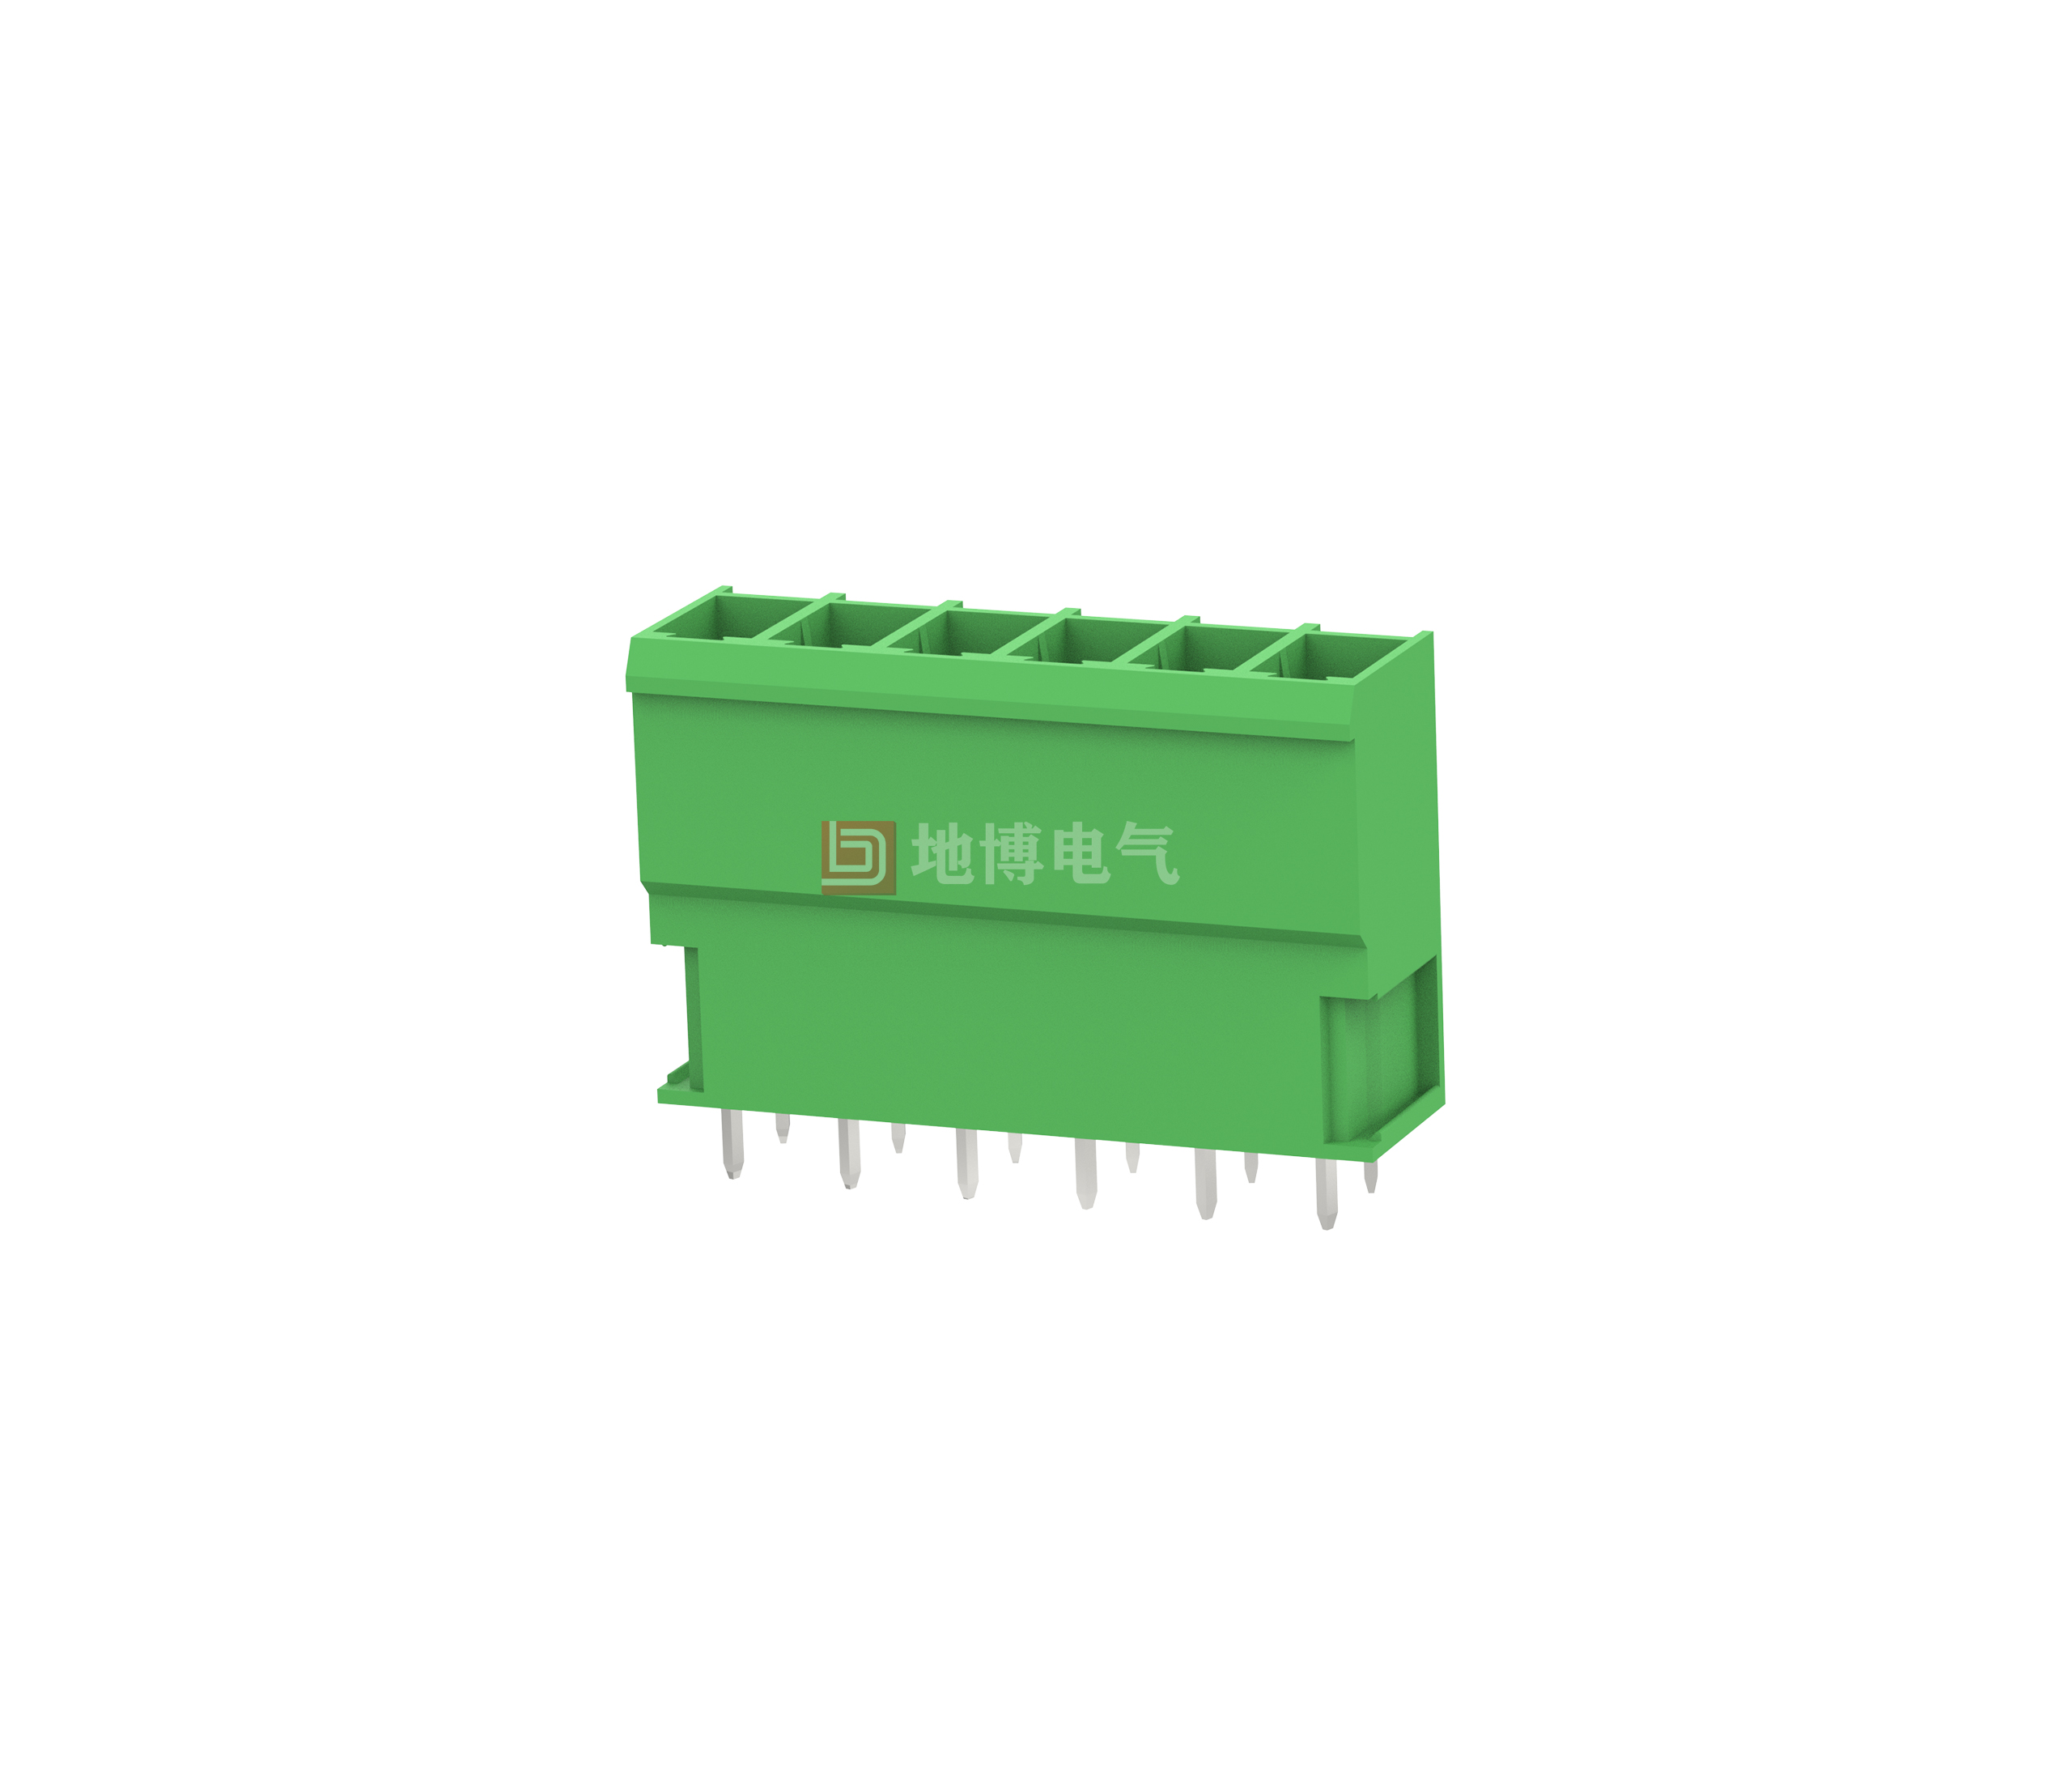 PCB socket DB3EVC-7.62